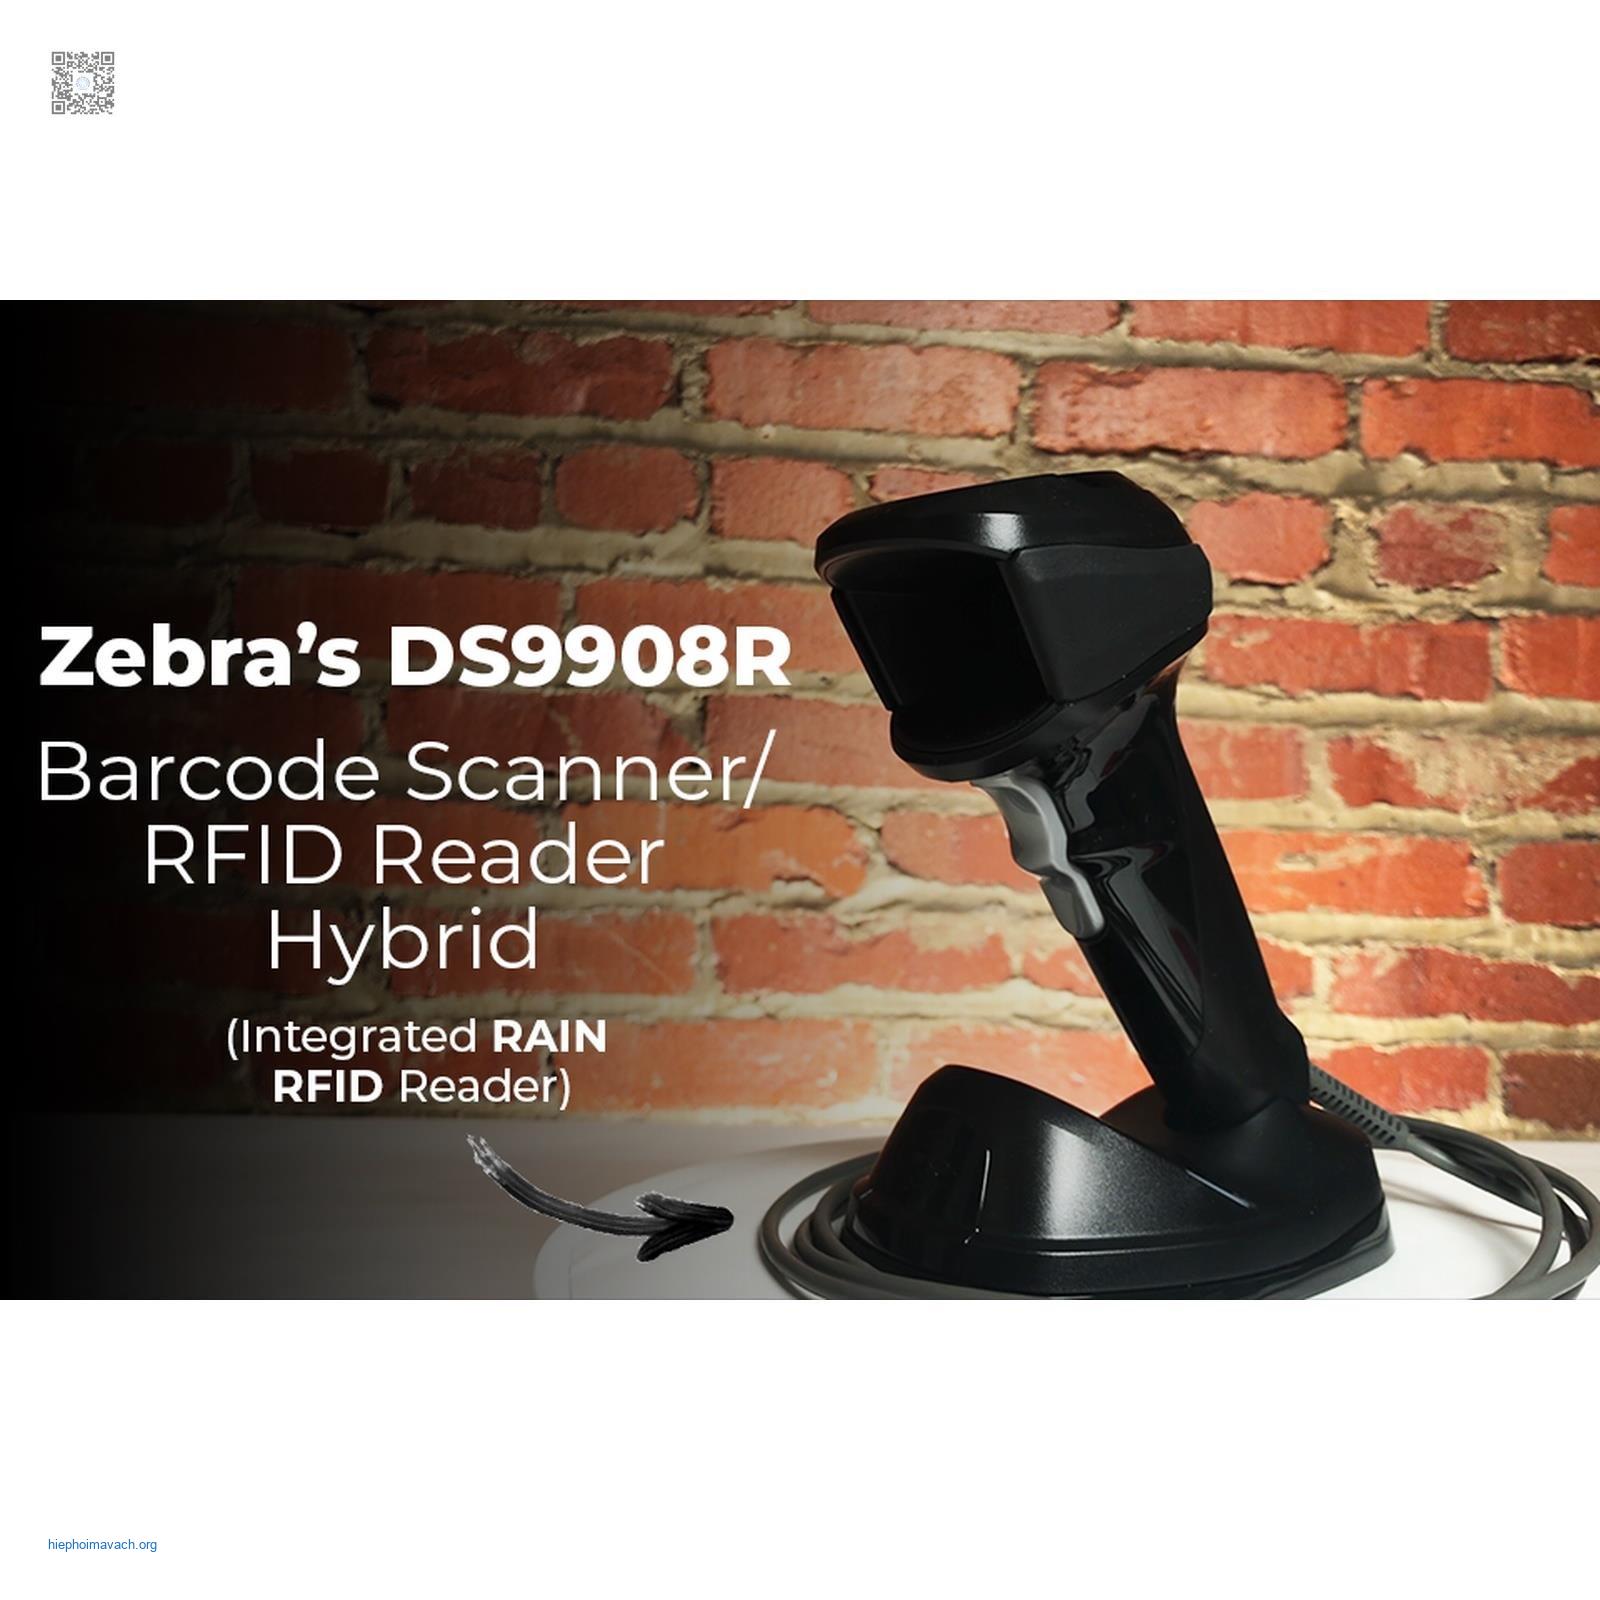 Đánh bật sự cồng kềnh với máy quét mã vạch Zebra DS9908R-HD: Giải pháp tối ưu cho việc quét mã vạch chính xác và nhanh chóng!